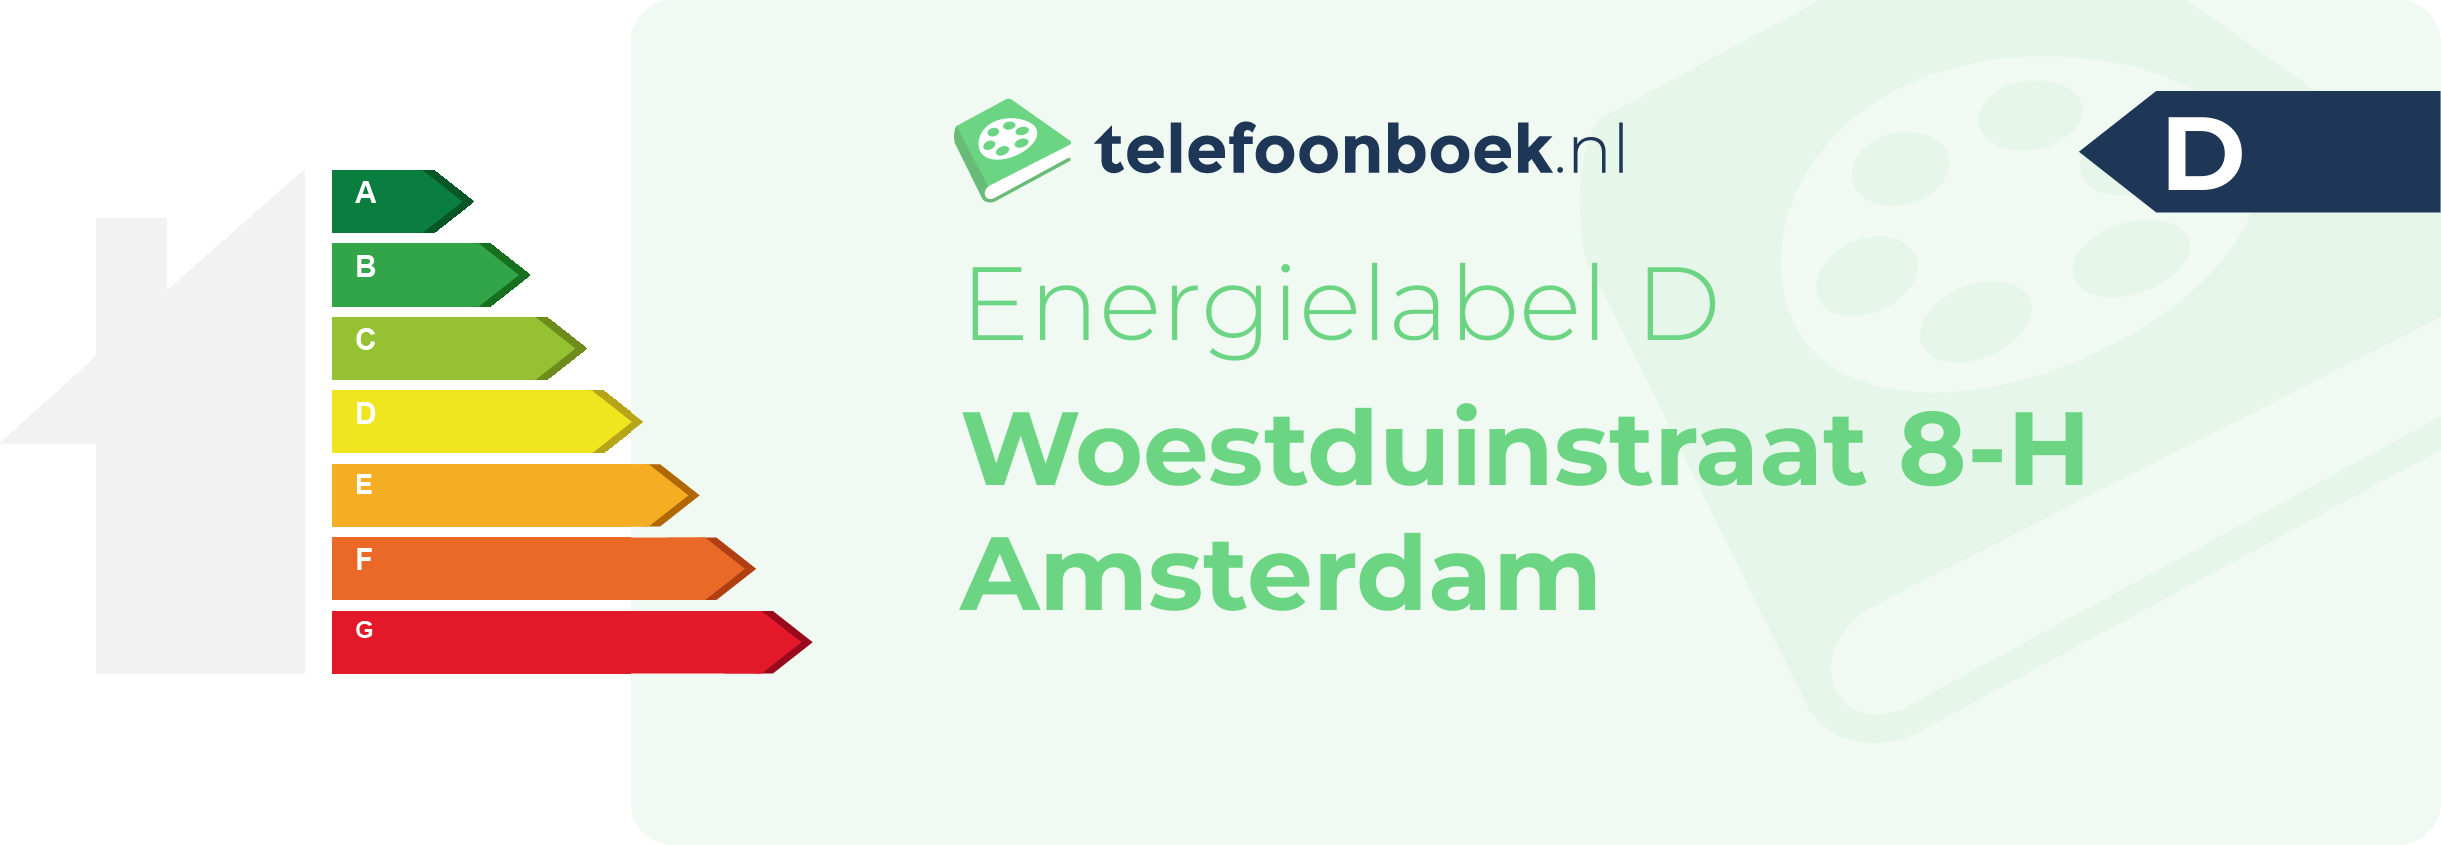 Energielabel Woestduinstraat 8-H Amsterdam